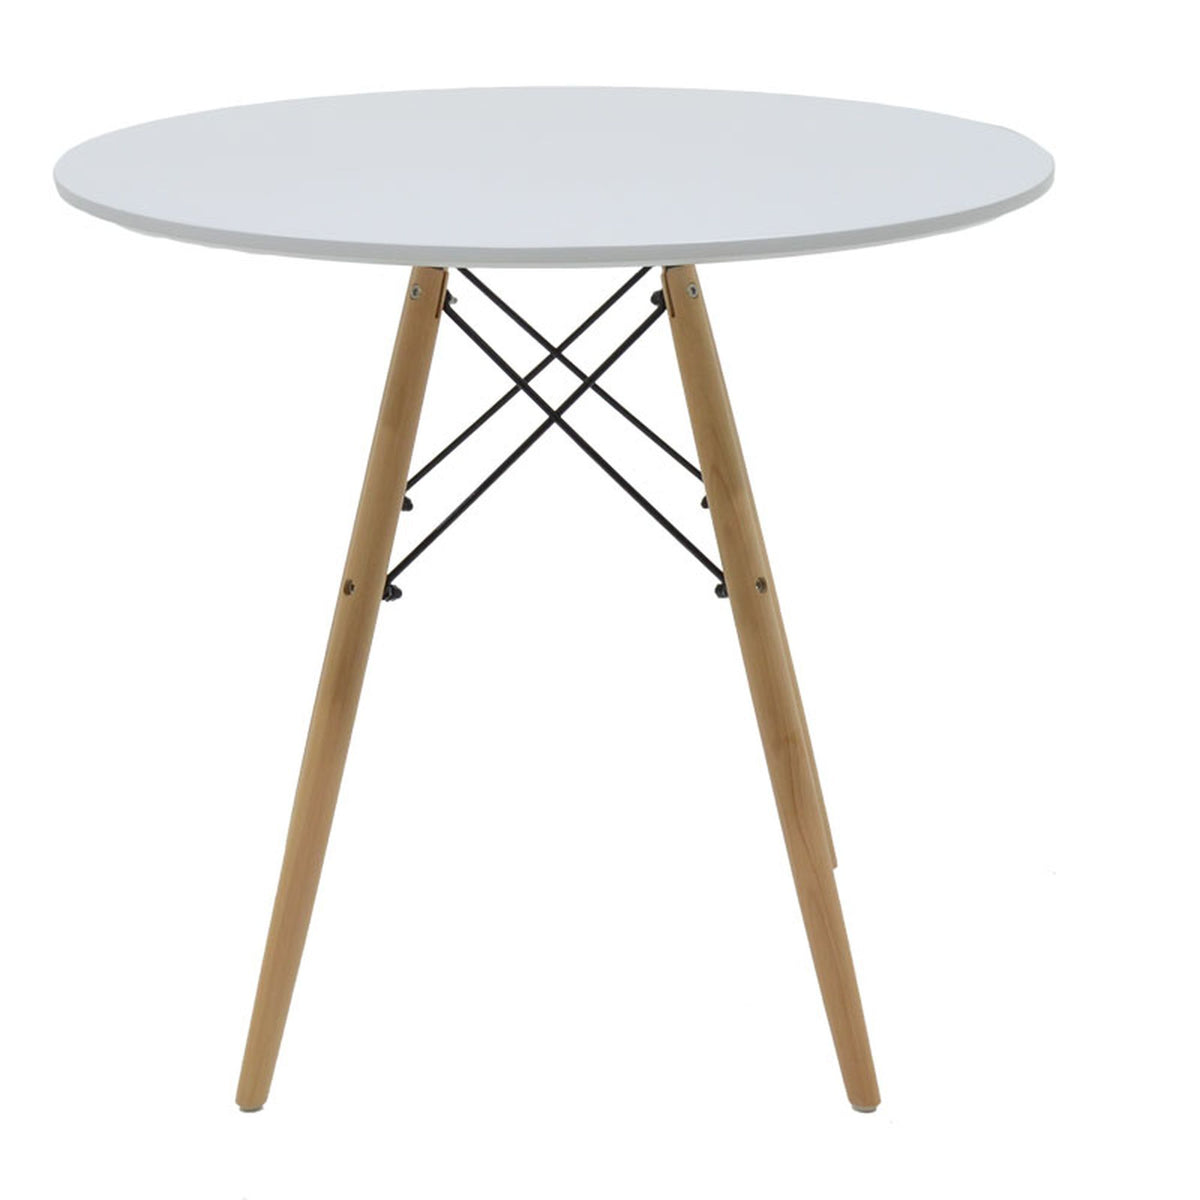 Jedálenský stôl Jardin 80x73x80 cm (biela, drevo)